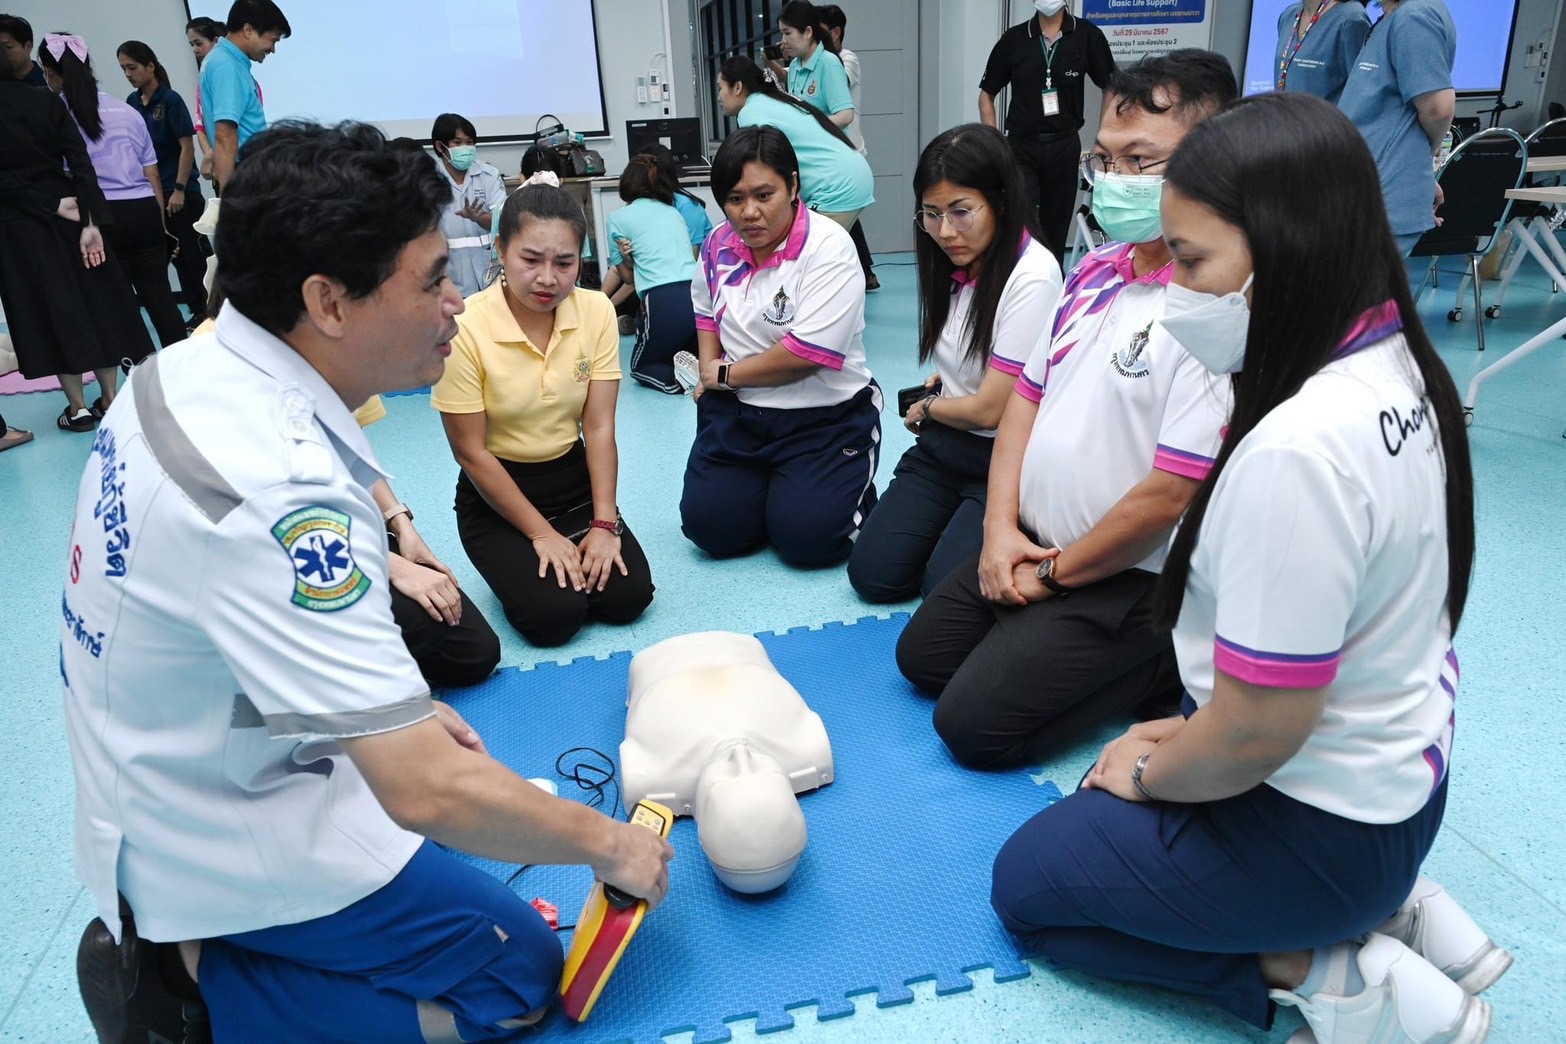 โรงพยาบาลเจริญกรุงประชารักษ์ ฝึกอบรมการปฐมพยาบาลเบื้องต้น และการกู้ชีพขั้นพื้นฐาน (CPR) สำหรับครูและบุคลากรผู้ปฏิบัติงานในโรงเรียนพื้นที่เขตยานนาวา